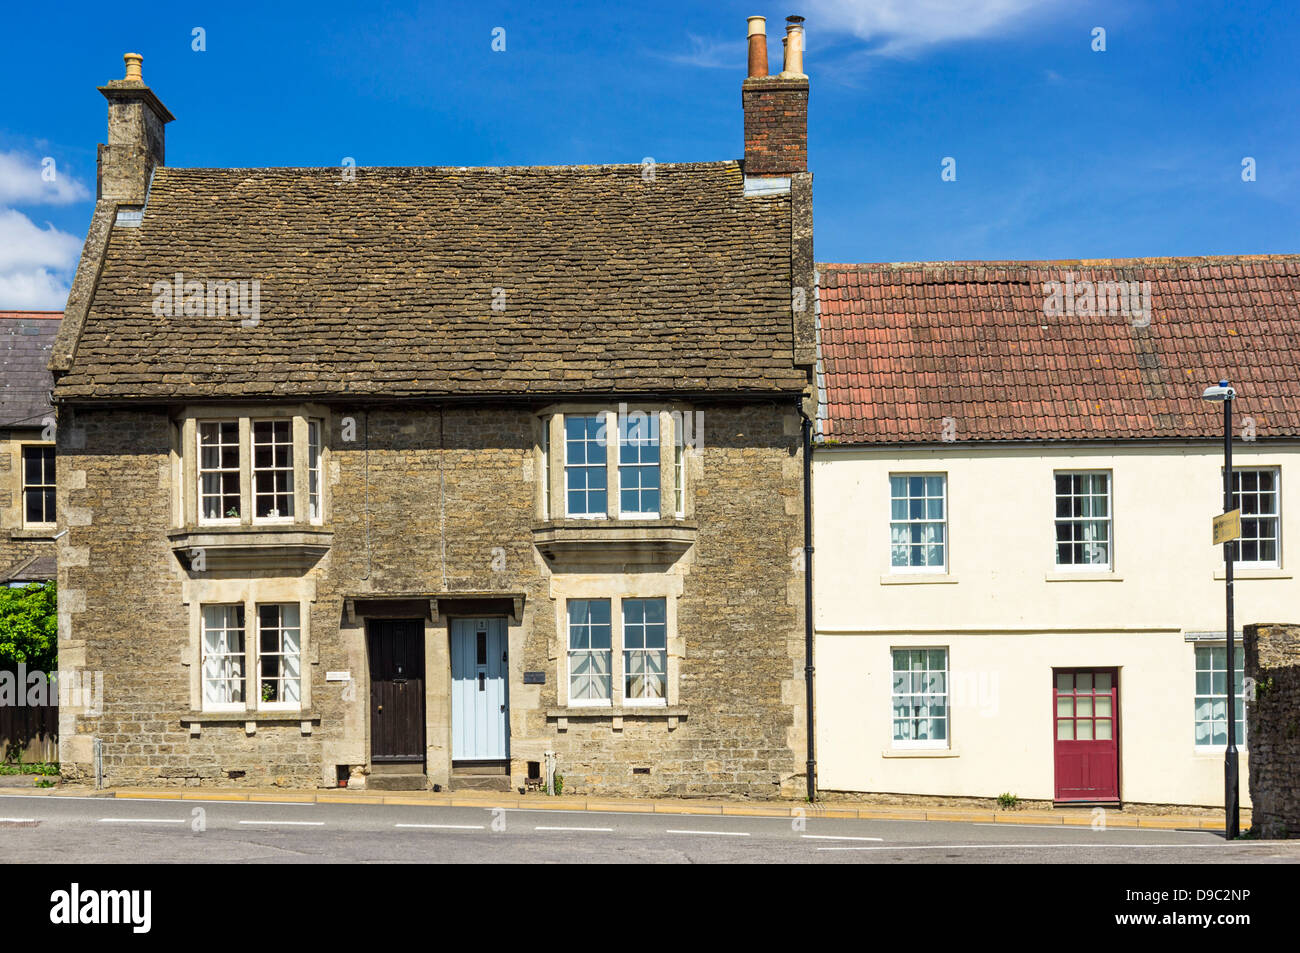 Vieilles maisons dans un village, England, UK Banque D'Images